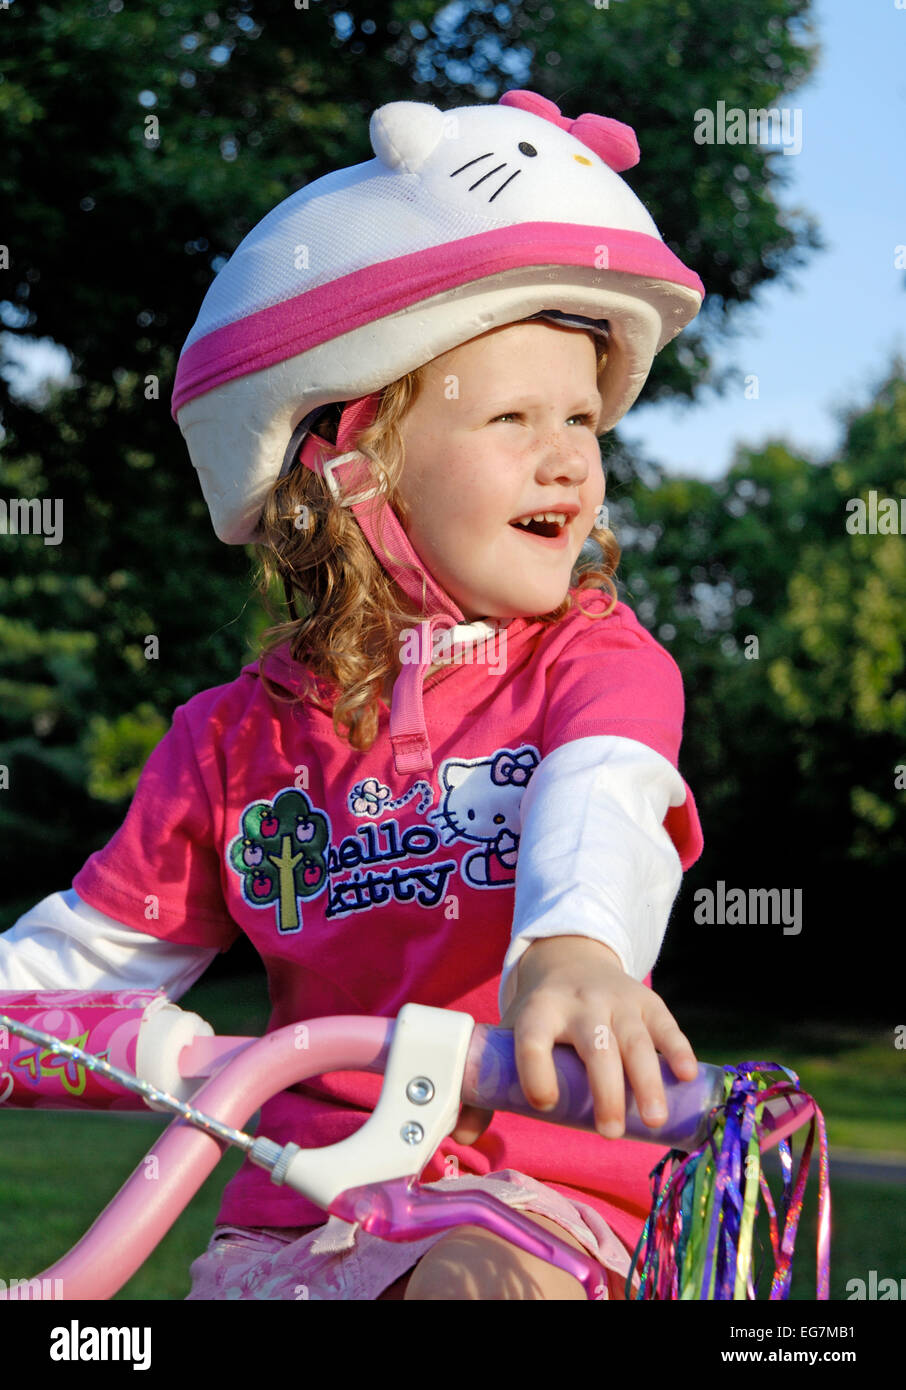 Fünf Jahres altes Mädchen mit Sicherheit Fahrradhelm lächelnd. Stockfoto